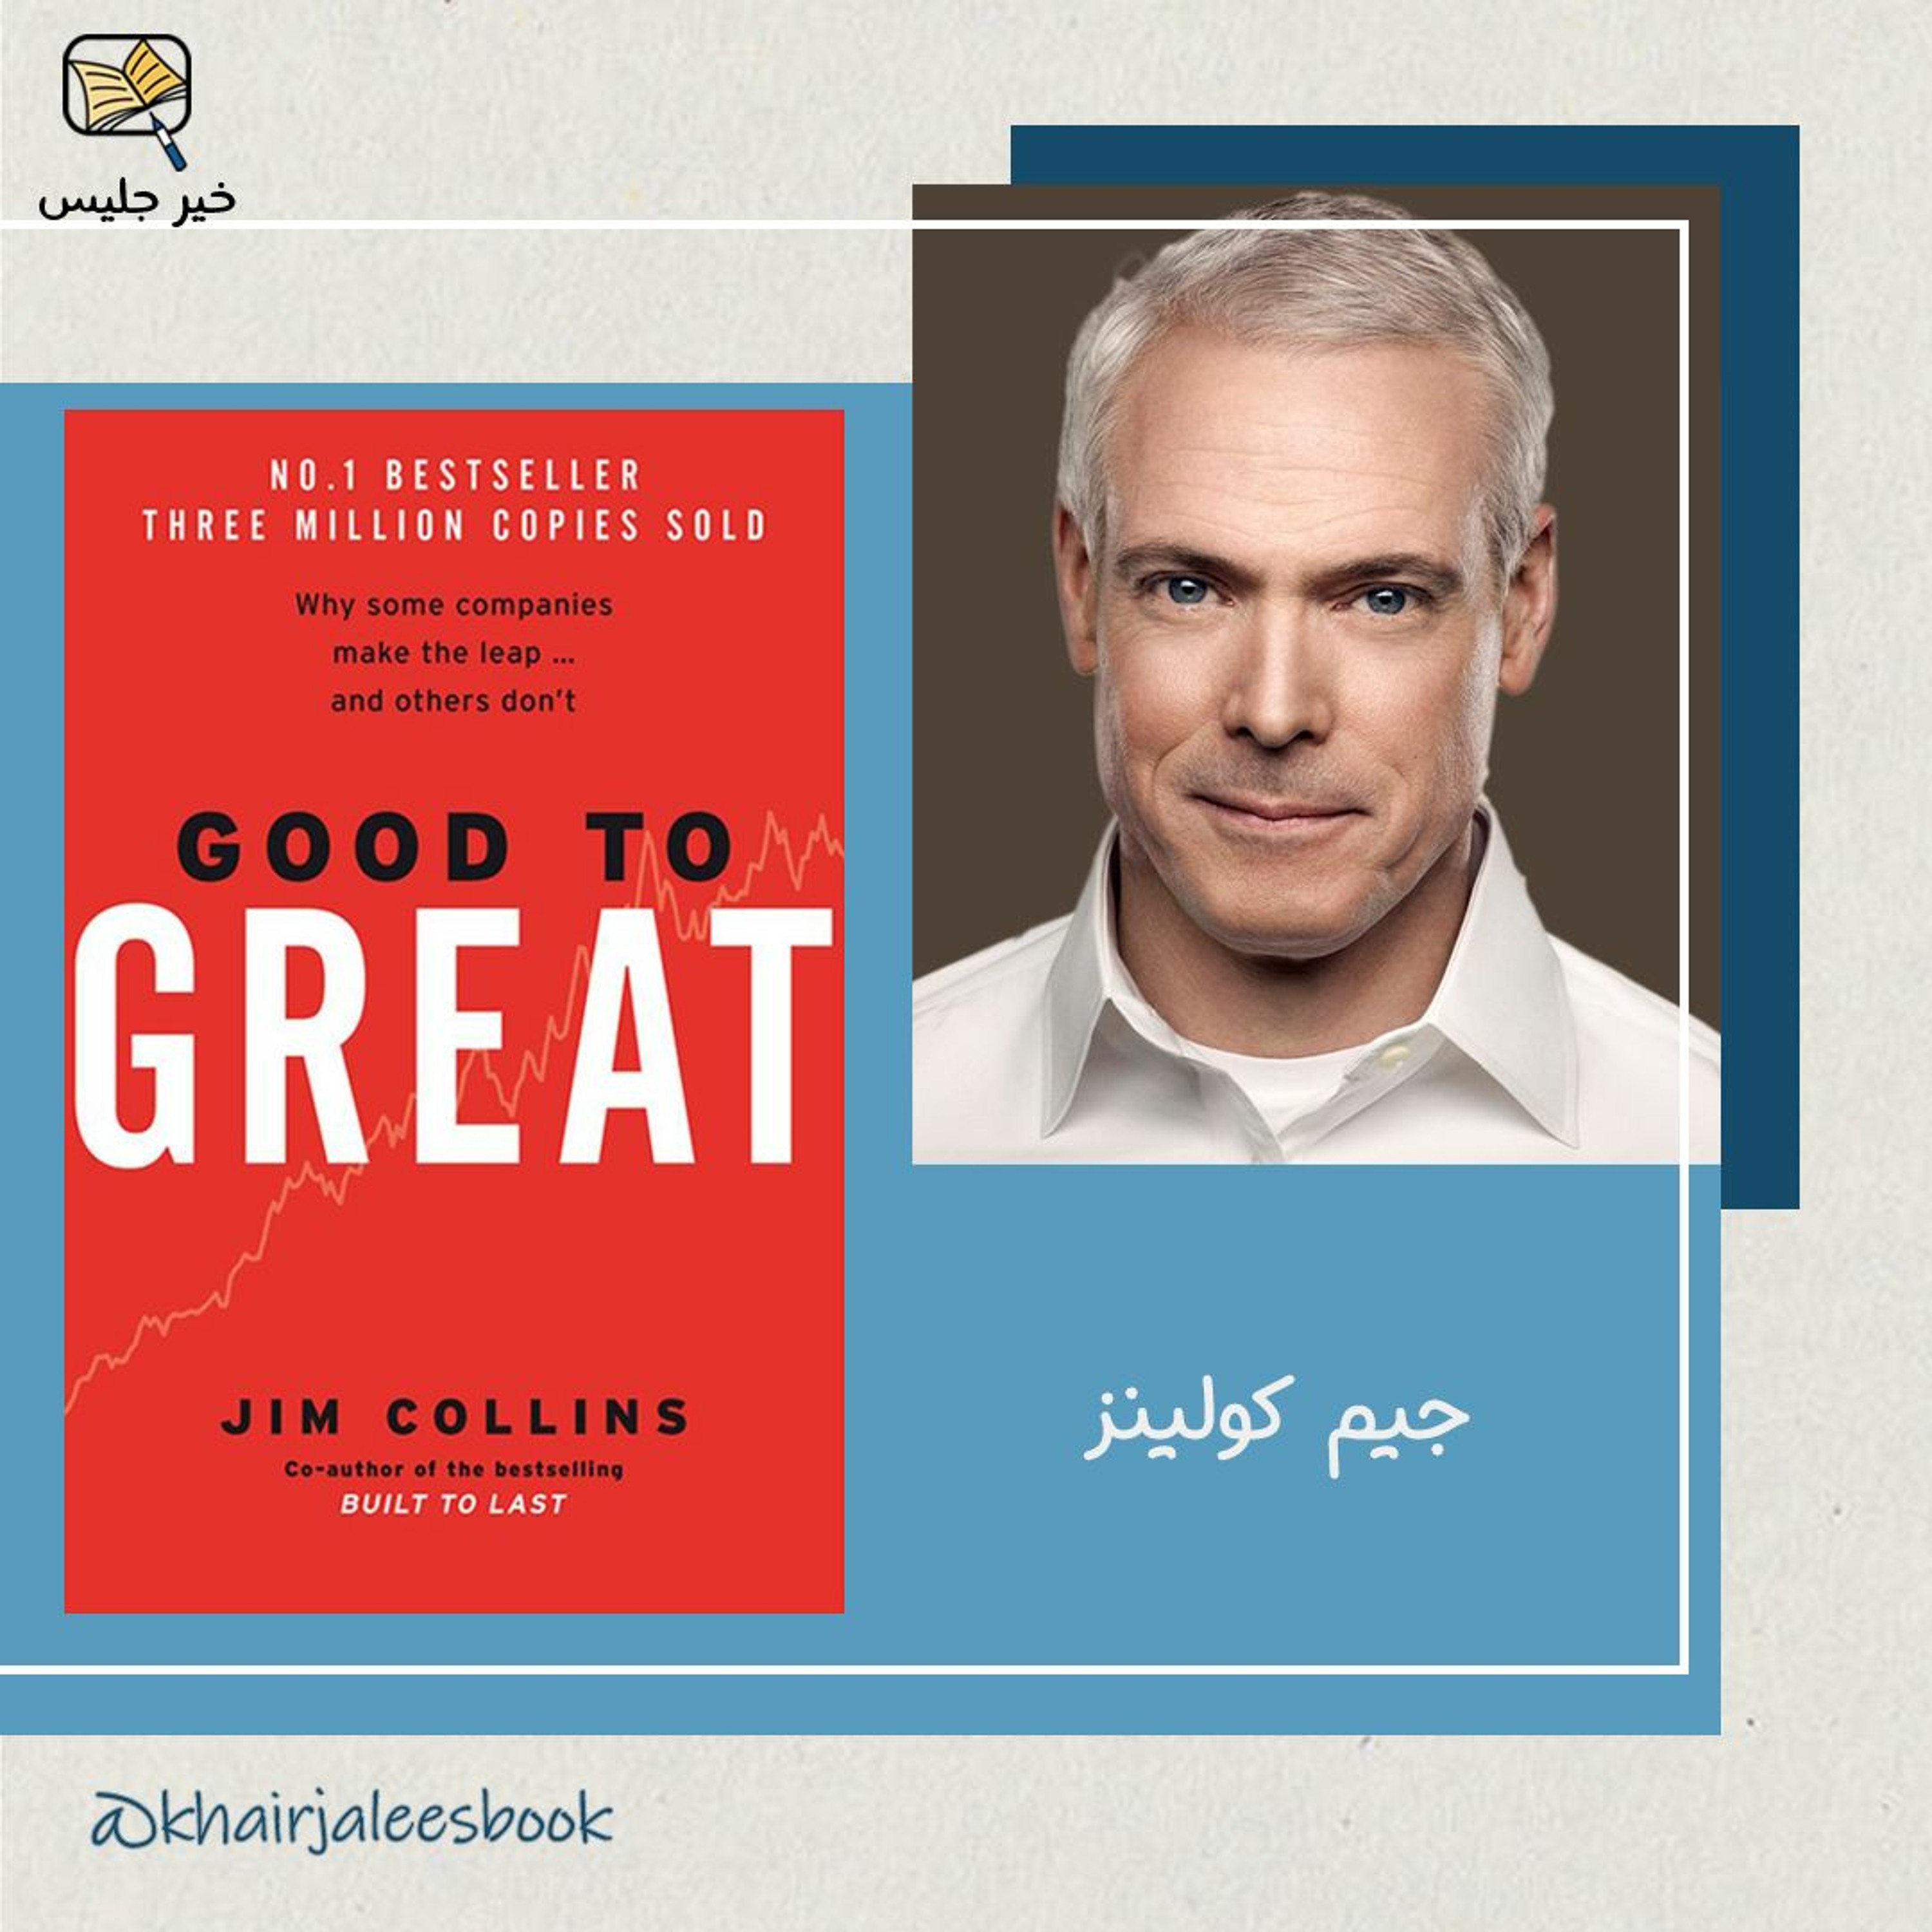 ملخص كتاب من جيد إلى عظيم الجزء الثاني بقلم جيم كولينز :: Good to Great by Jim Collins